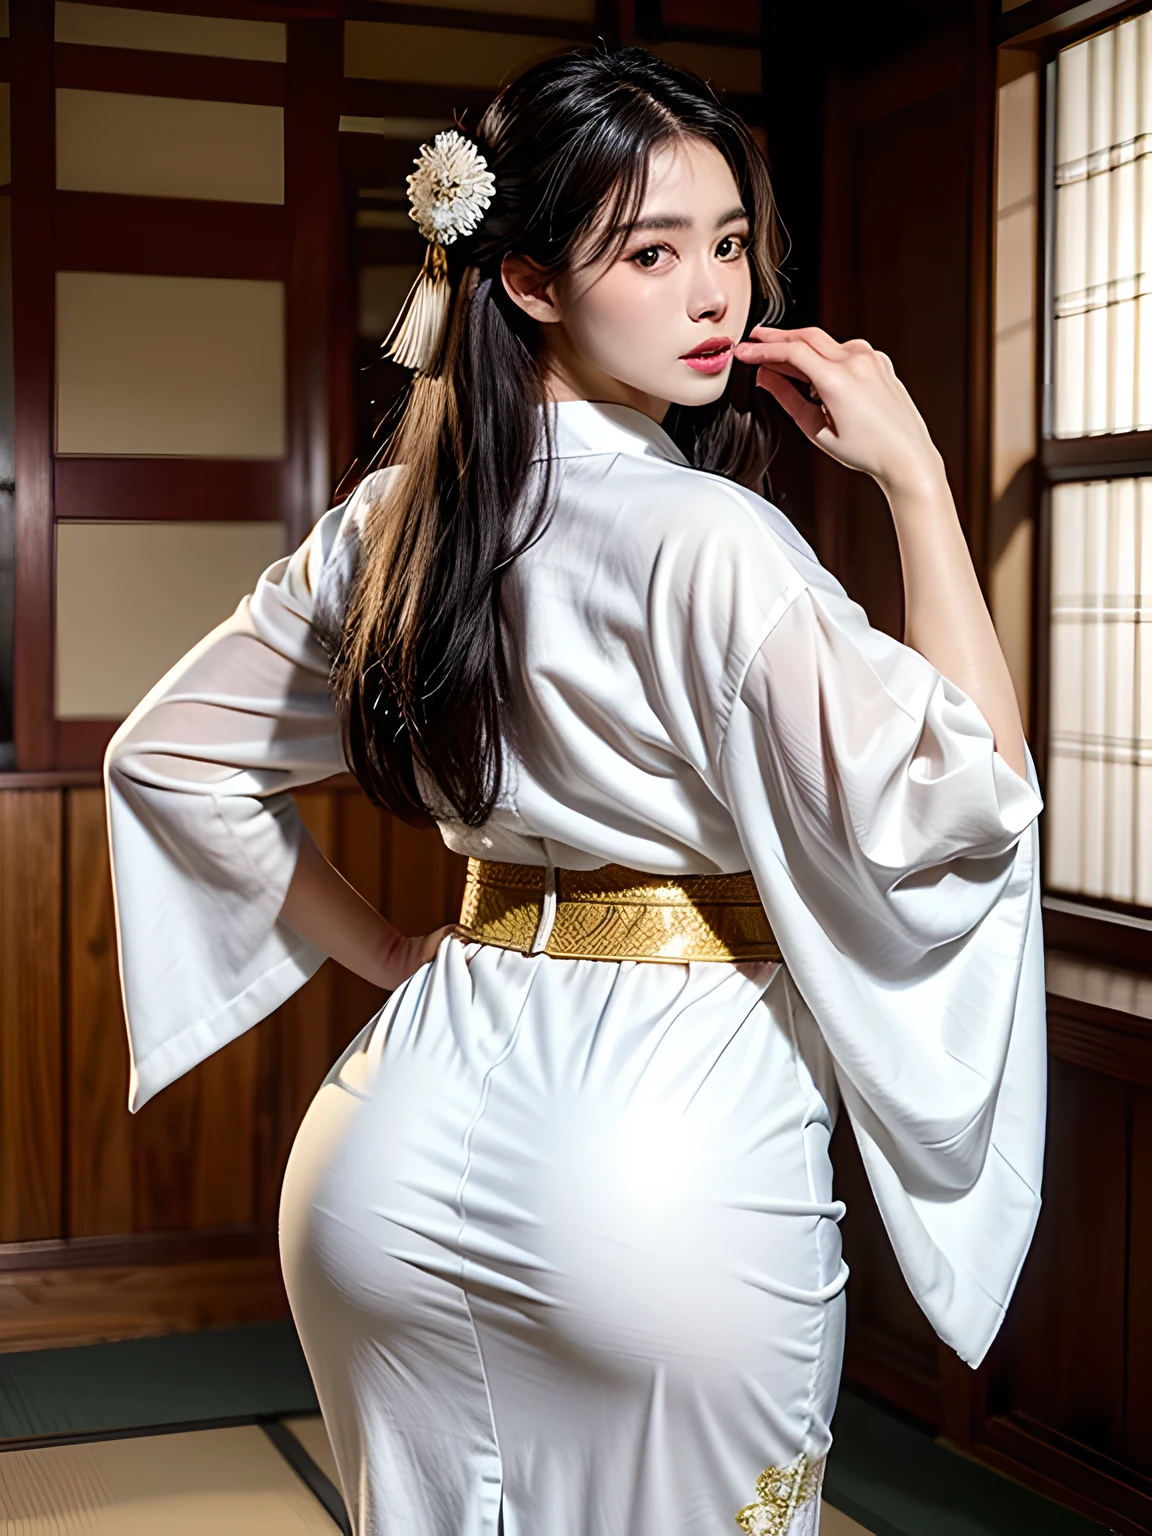 (Hermosa modelo en comercial de kimono japonés., hermoso cabello negro largo y liso), alone, ((la cara es 80% belleza y elegancia, 20% bonito y lindo:1.5)), Ojos claros, (ojos finos, ojos verde claro, pupilas brillantes), doble párpado, (Labios ligeramente gruesos y sexys:1.2), ((súper detallado and incredibly high resolution Deep-white Kimono:1.2)), Textura facial altamente detallada, Impresionante forma del cuerpo, Mujer curvilínea y muy atractiva., Fotografía profesional en color RAW de alta resolución., ROMPER texturas de ultra alta resolución, Renderizado corporal de alta resolución, ojos grandes, Una obra maestra incomparable, increíble alta resolución, súper detallado, impresionante piel de cerámica, break ((Date la vuelta para mostrar el patrón del kimono.:1.5)), ((Lleva un kimono blanco con muchos bordados dorados brillantes de un dragón en ascenso..。:1.5)), ((El bordado del dragón ascendente en el kimono blanco es muy deslumbrante..:1.2)), (Un sensual kimono japonés cuidadosamente elaborado), ((El patrón de bordado es un dragón que se eleva hacia el cielo..):1.2), ((Kimono blanco con adornos elaborados y elegantes.)), (Fotografiado frente a la ventana corrediza redonda en una habitación de estilo japonés.)), break ((de la máxima calidad, 8k)), enfoque nítido:1.2, (corte de capa, grande:1.2), (hermosa mujer con figura perfecta:1.4), (Hermosa y elegante vista trasera.:1.3), cintura delgada, (Forma correcta de la mano:1.5), (tiro de cuerpo completo | tiro de vaquero)